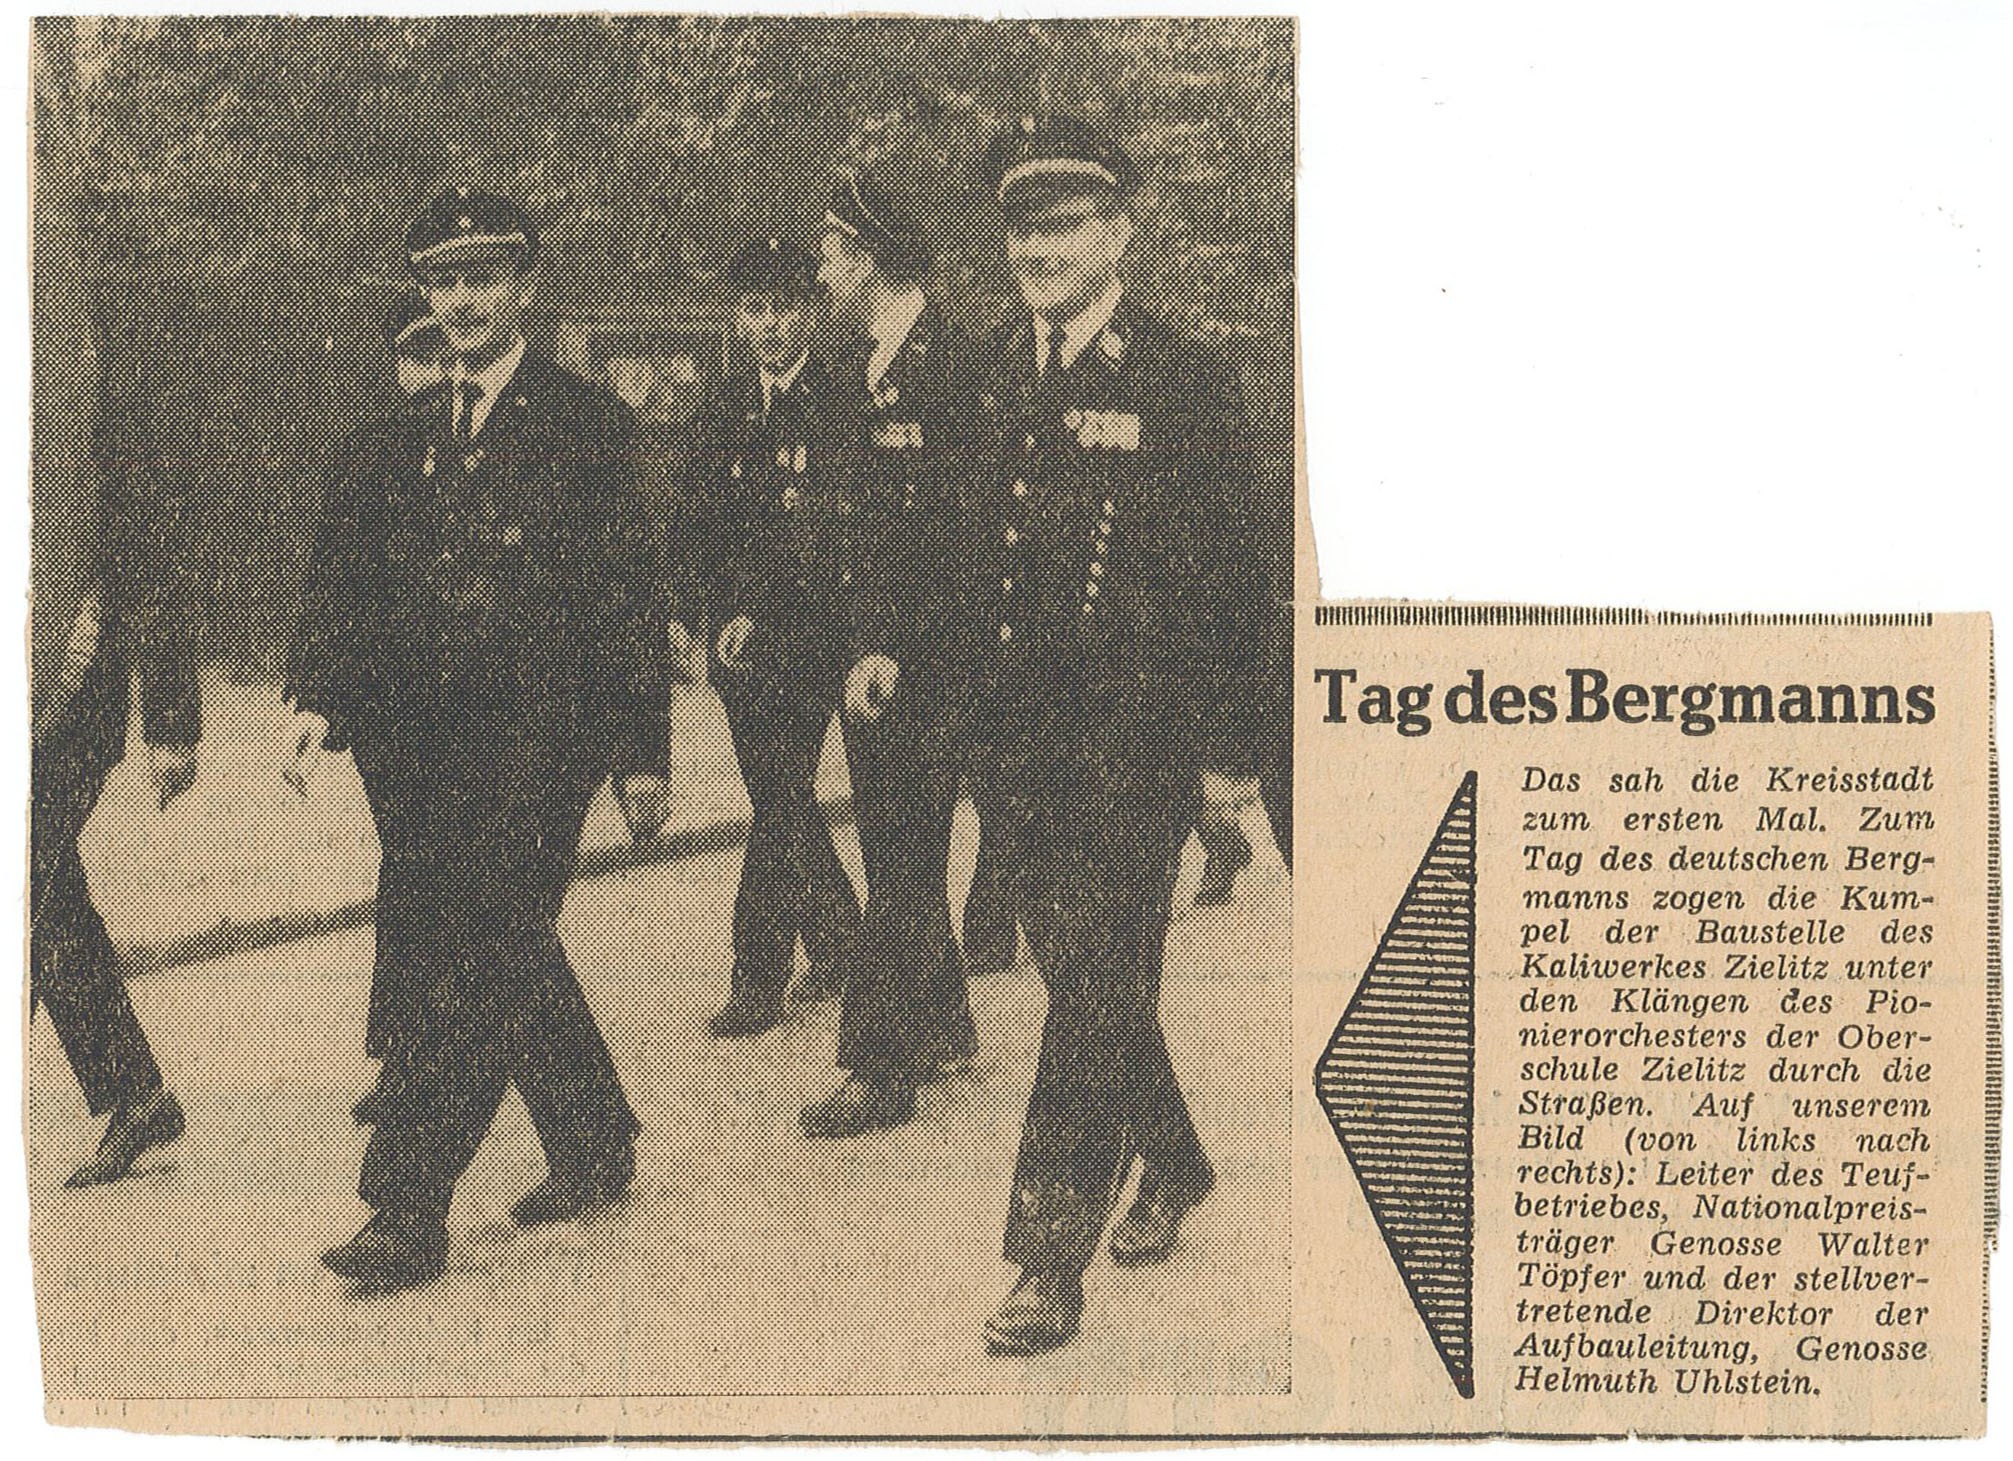 Bild / Zeitungsartikel "Tag des Bergmanns" (Museum Wolmirstedt RR-F)